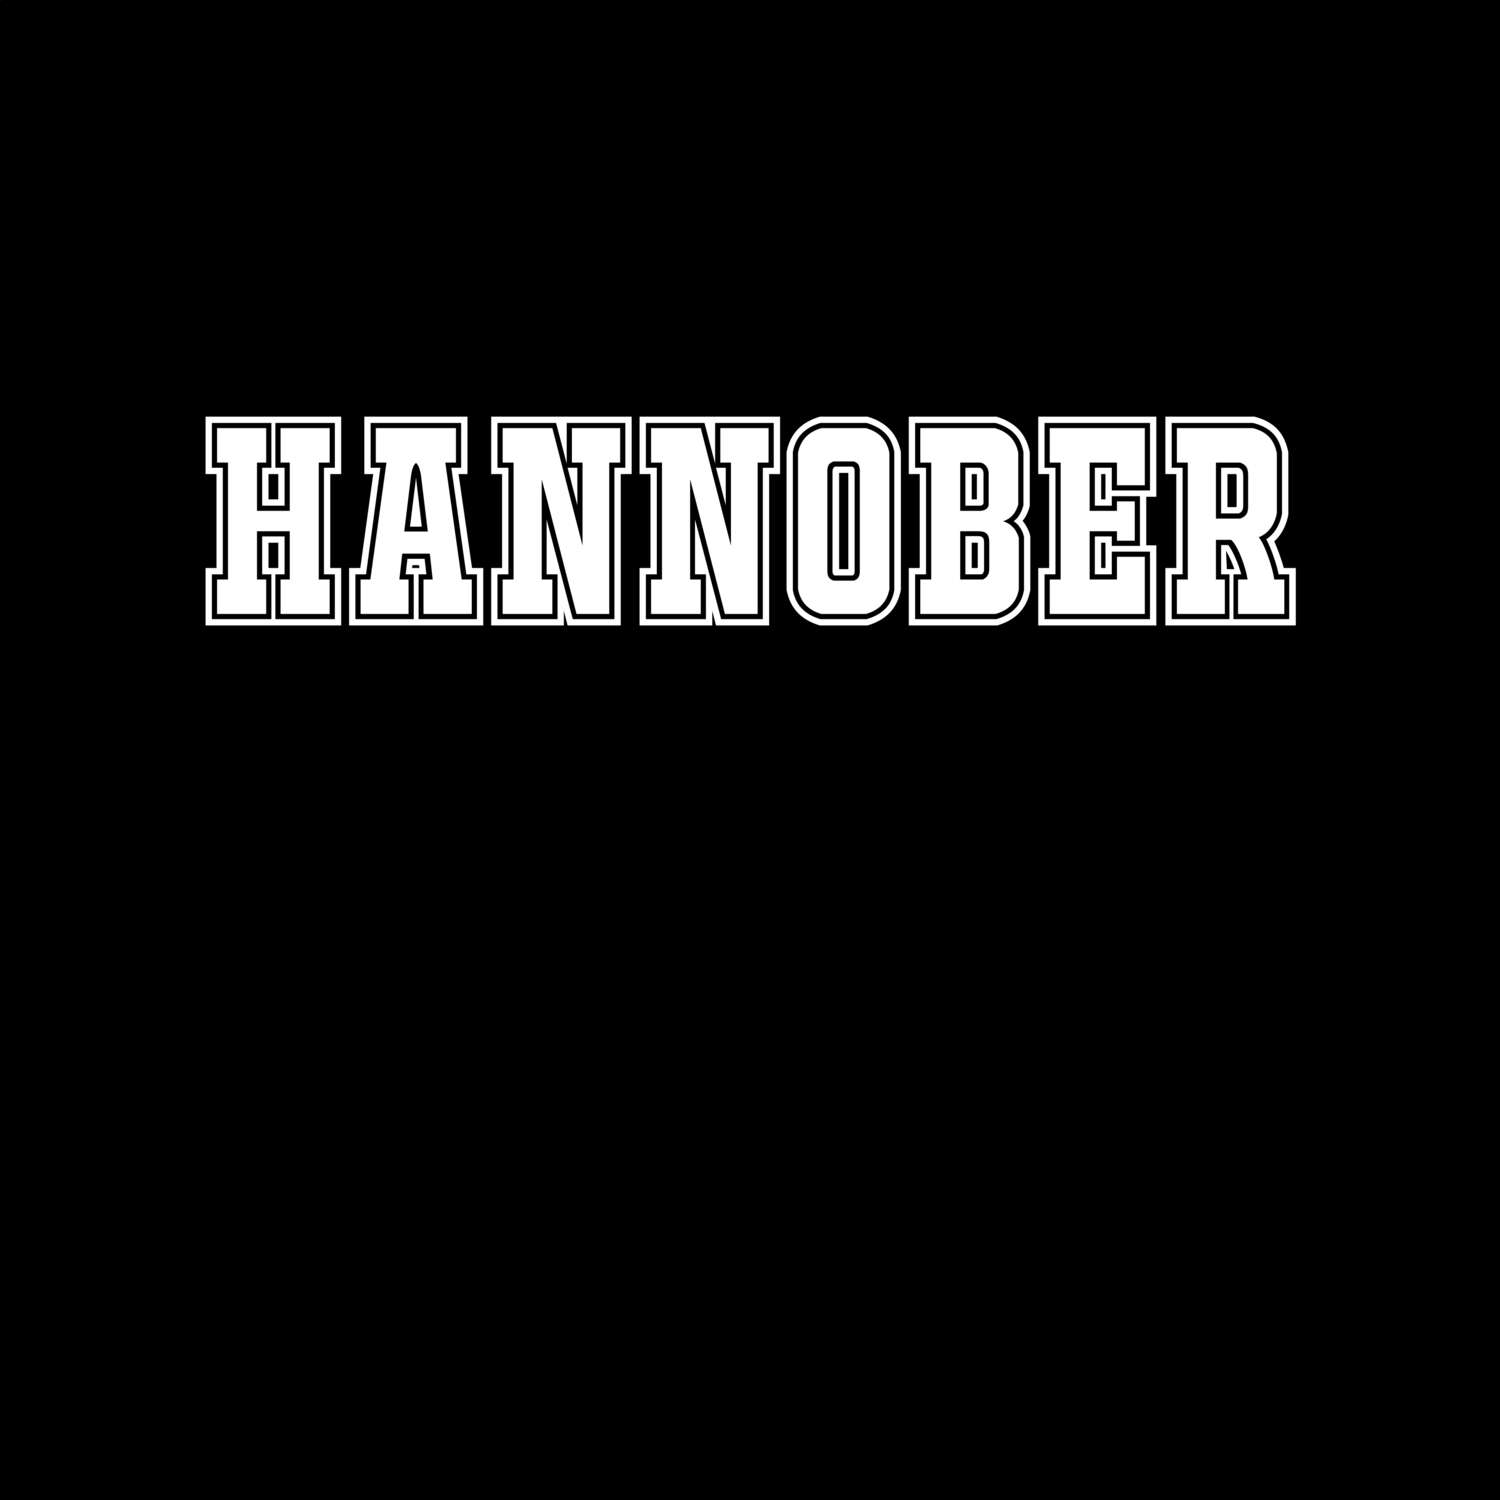 Hannober T-Shirt »Classic«